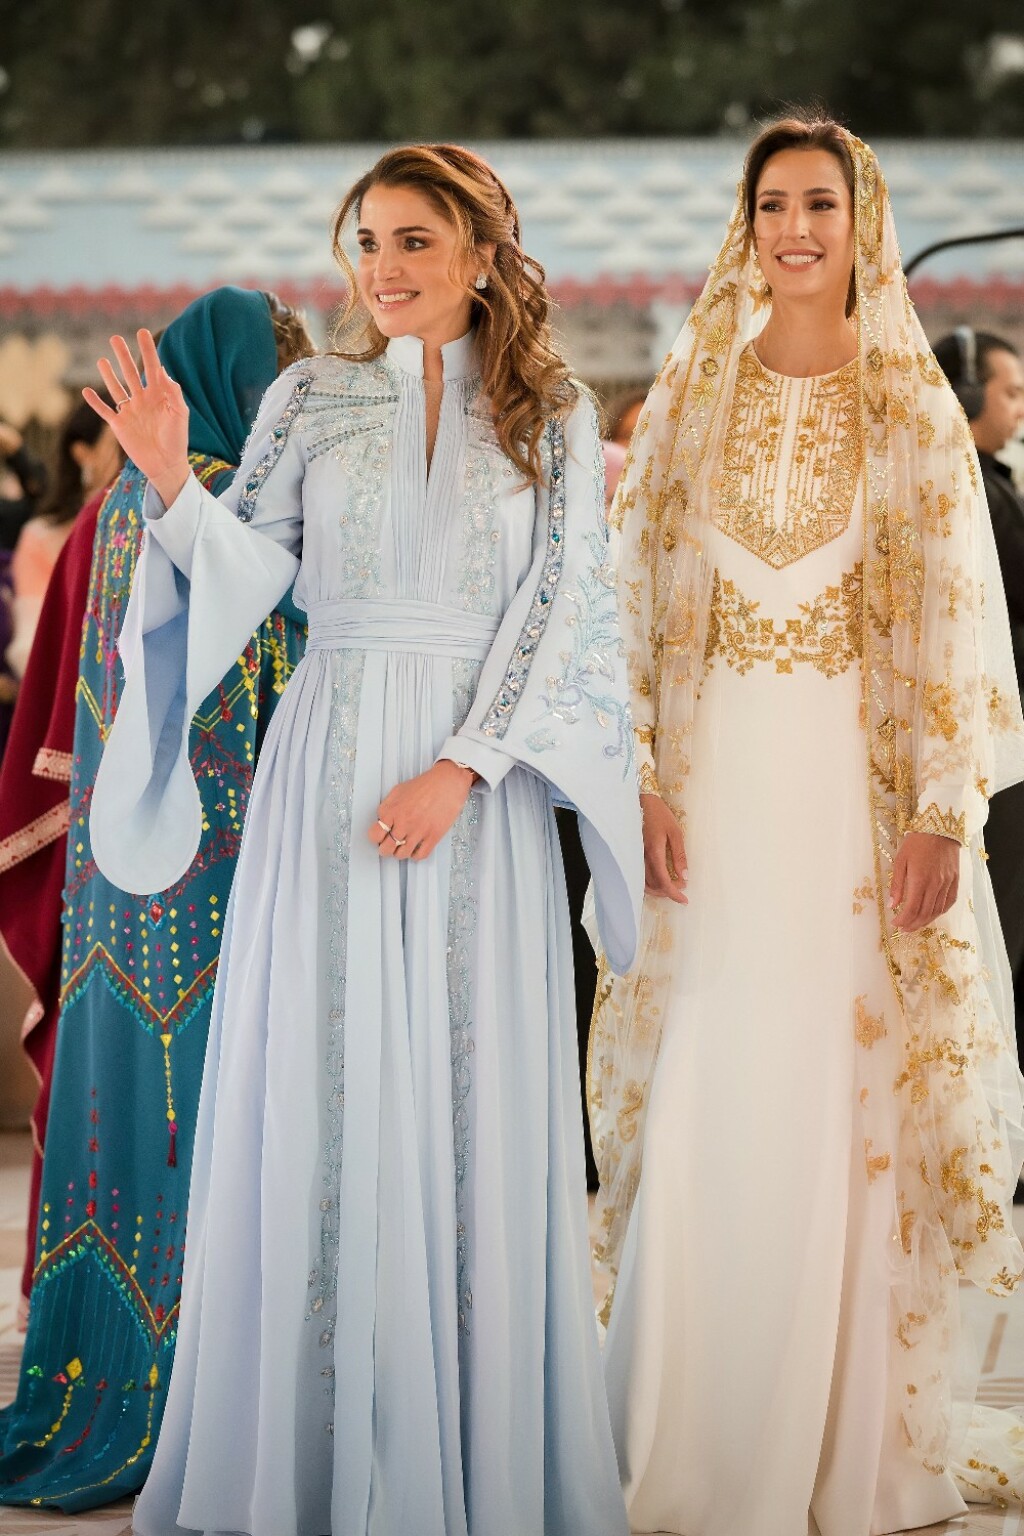 Kraljica Rania i njezina buduća snaha Rajwa Al-Saif